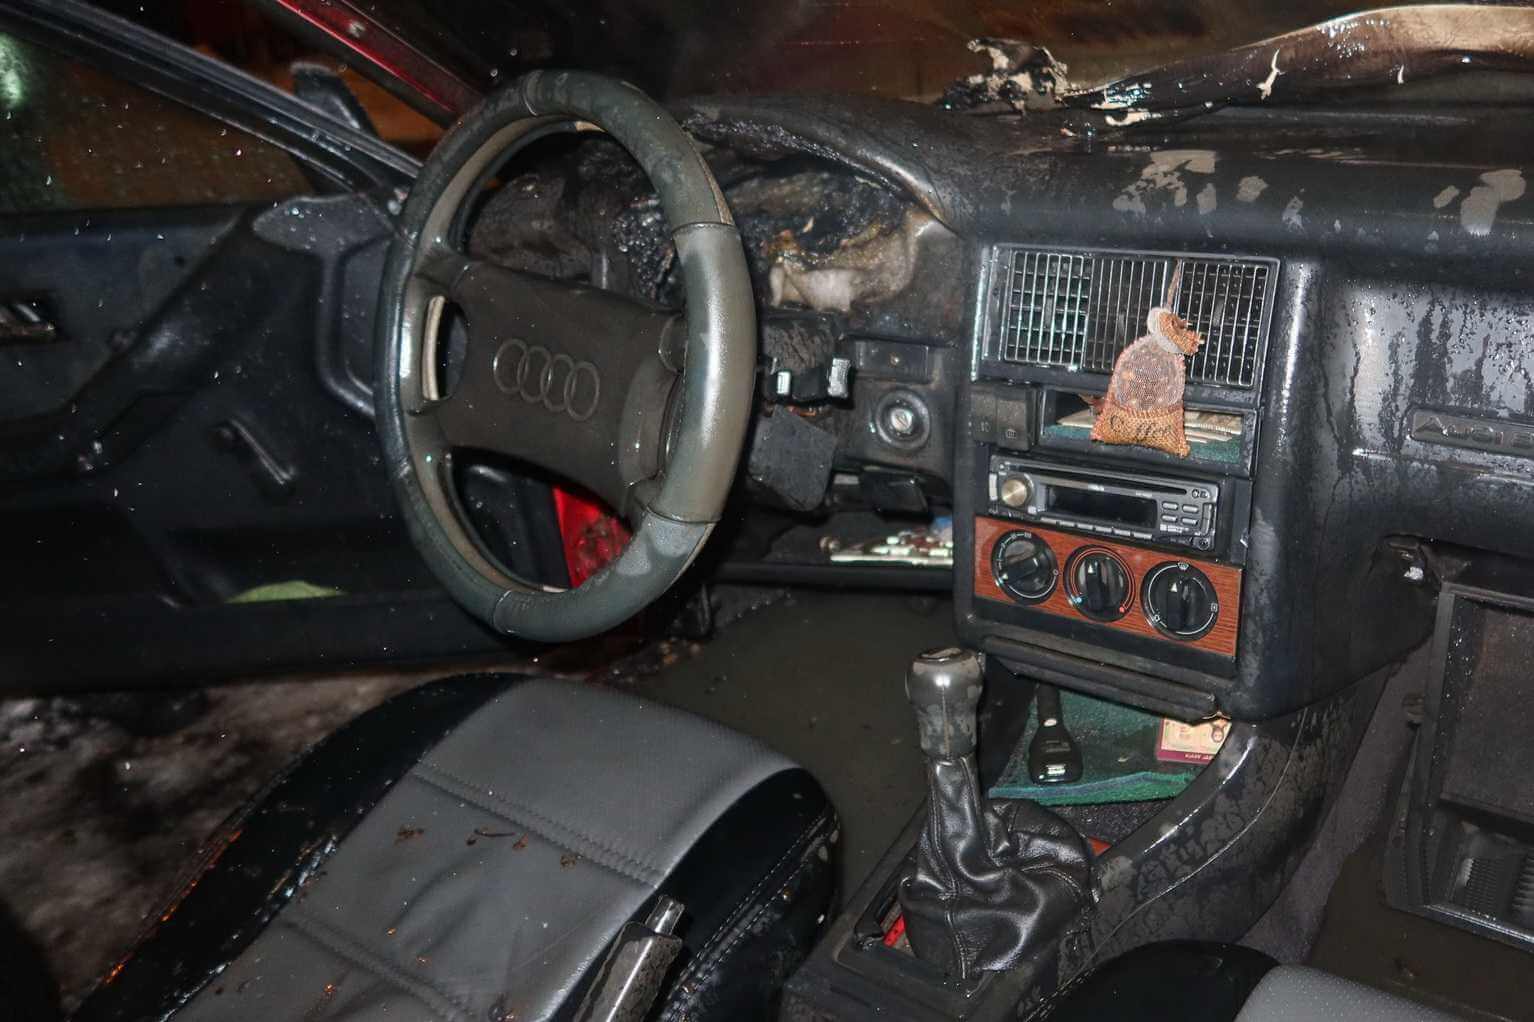 Автомобиль, балкон и баня горели в Могилеве на прошлой неделе